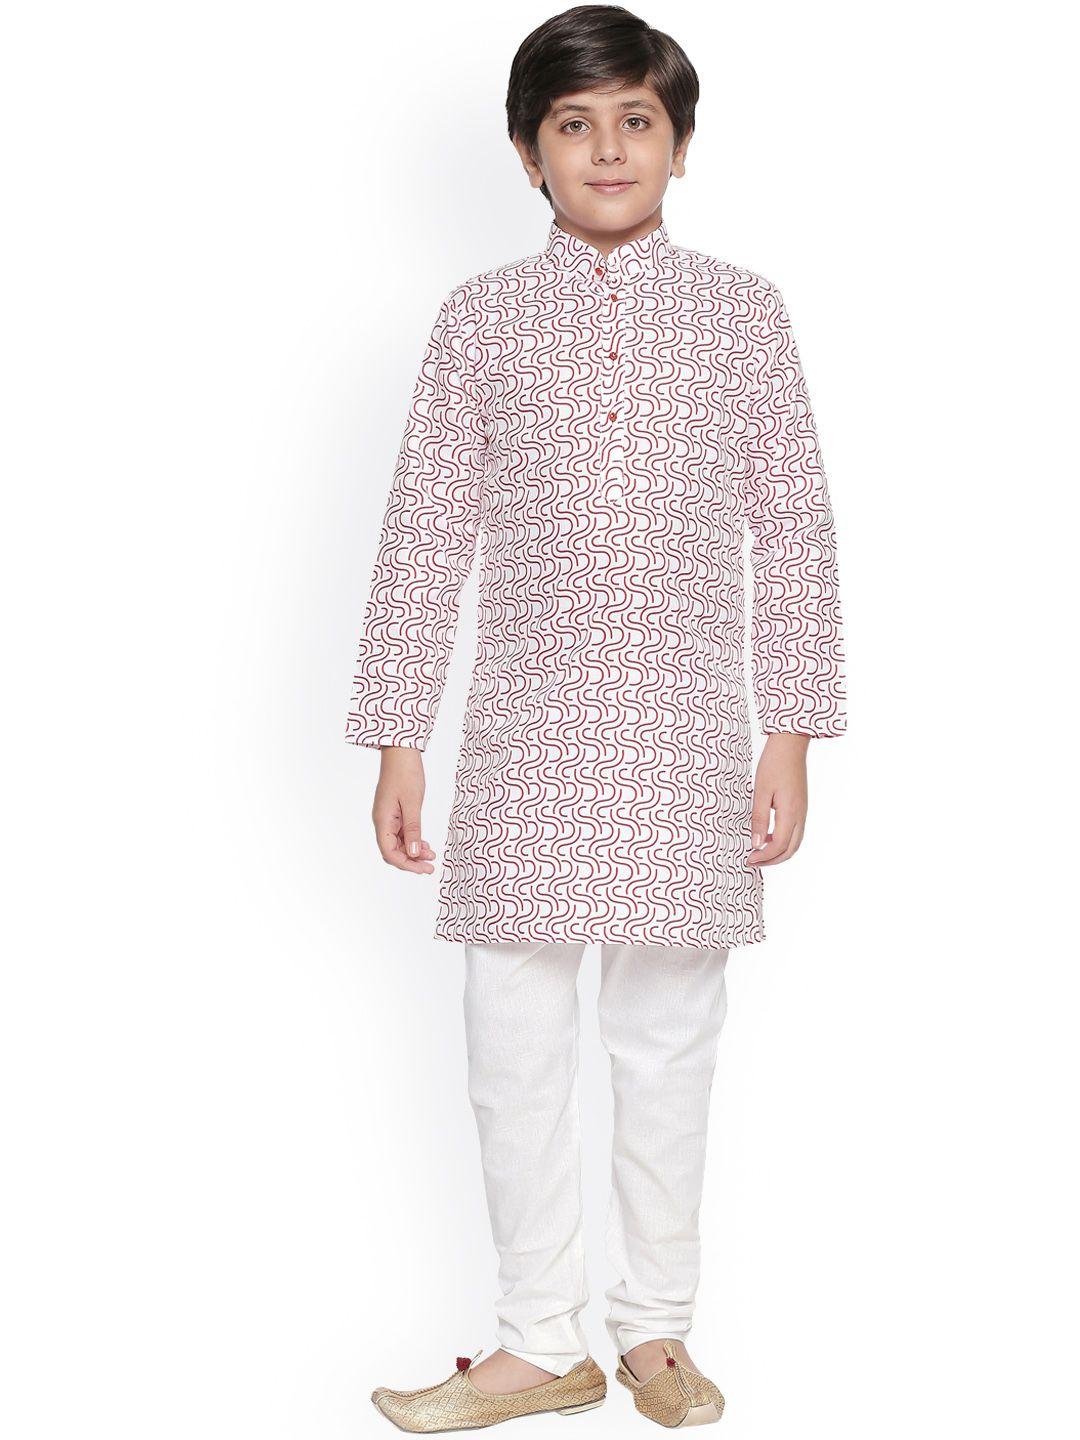 jeetethnics boys white printed regular kurta with pyjamas